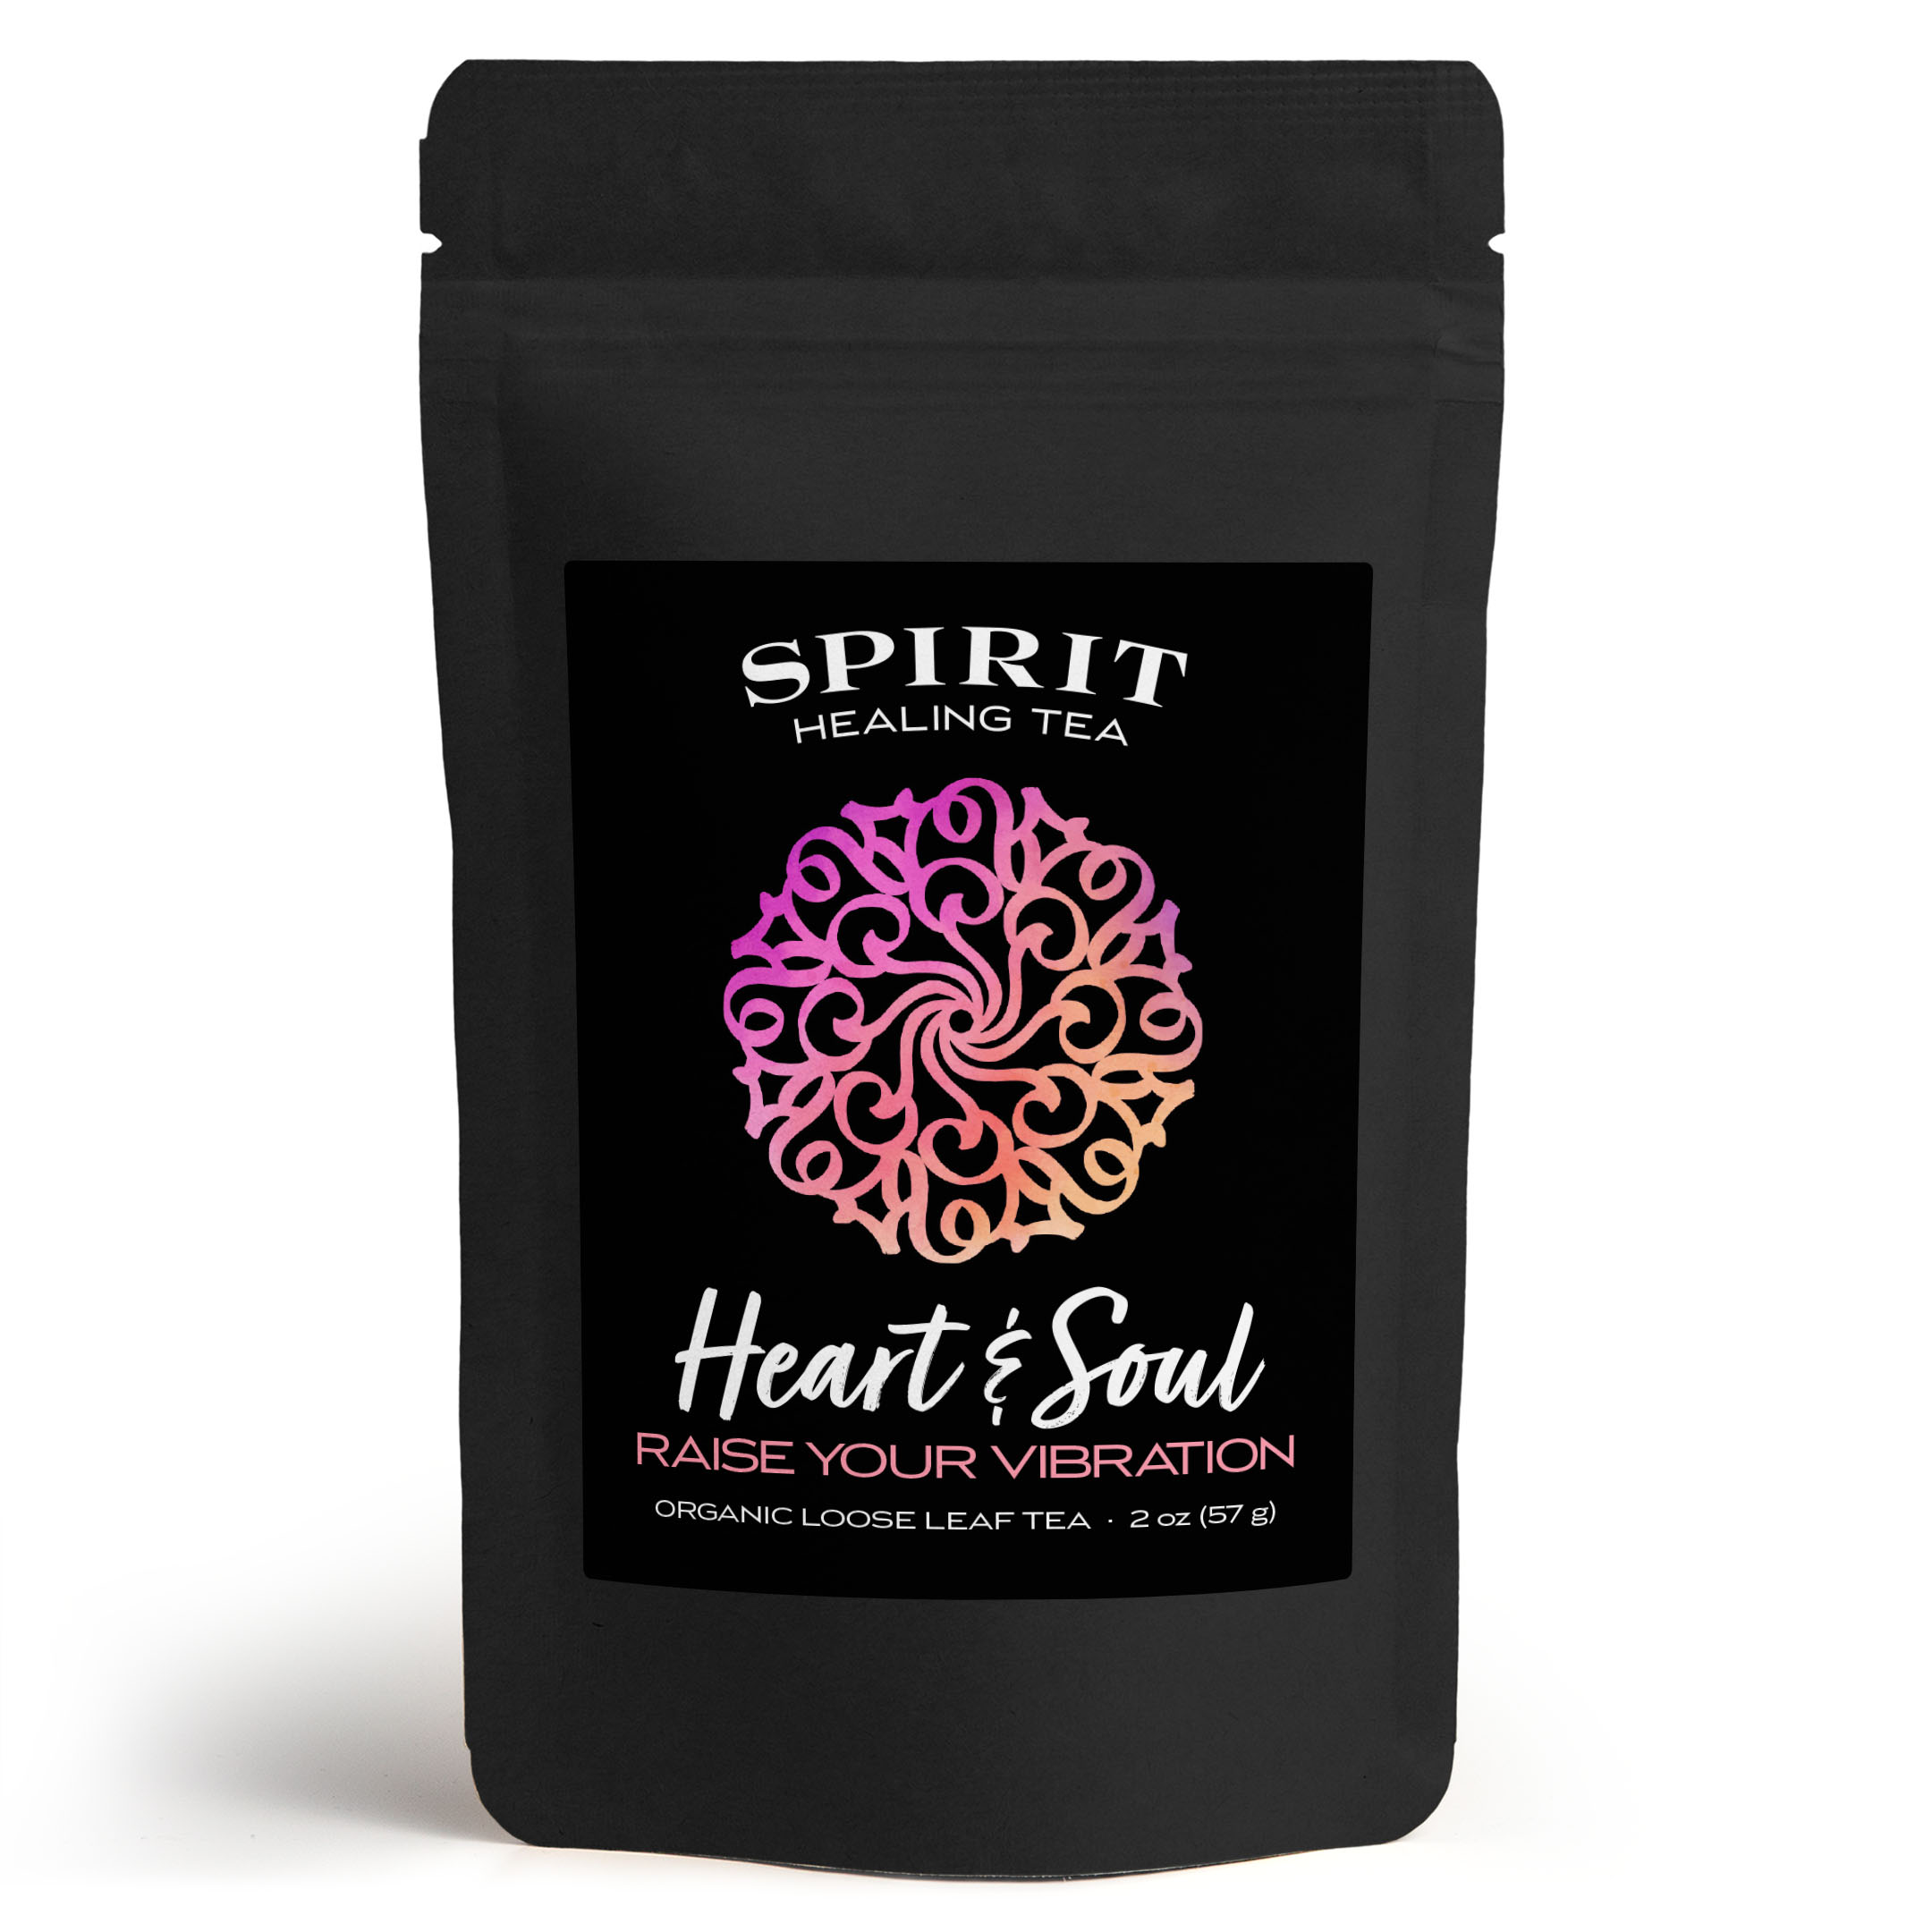 Heart & Soul Tea by Spirit Healing Tea